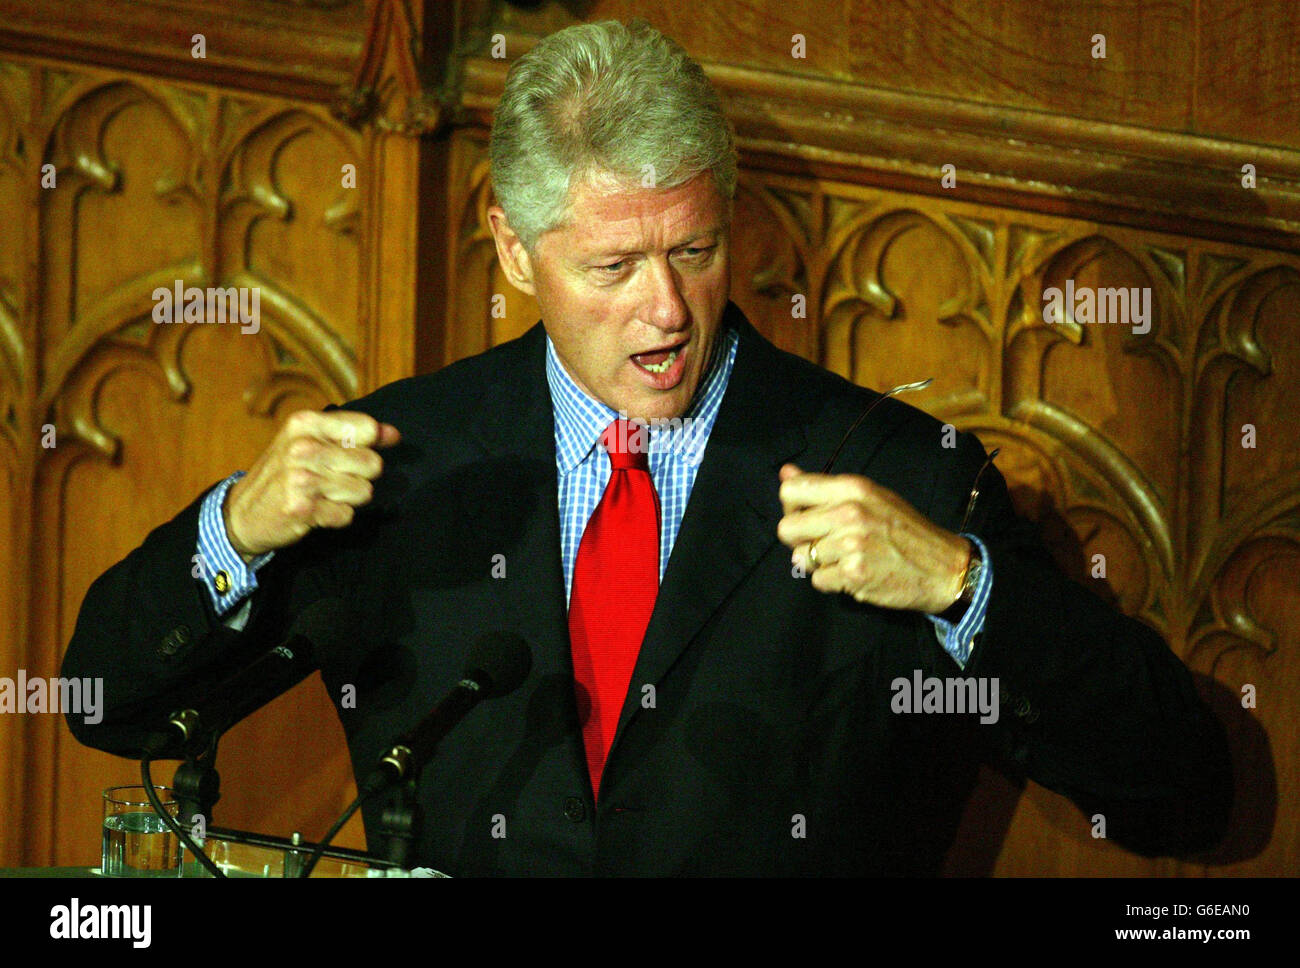 L'ancien président des États-Unis d'Amérique, Bill Clinton, lors de son discours au Guildhall de la City de Londres, après le dîner de la conférence sur la gouvernance progressive, ce soir. Banque D'Images